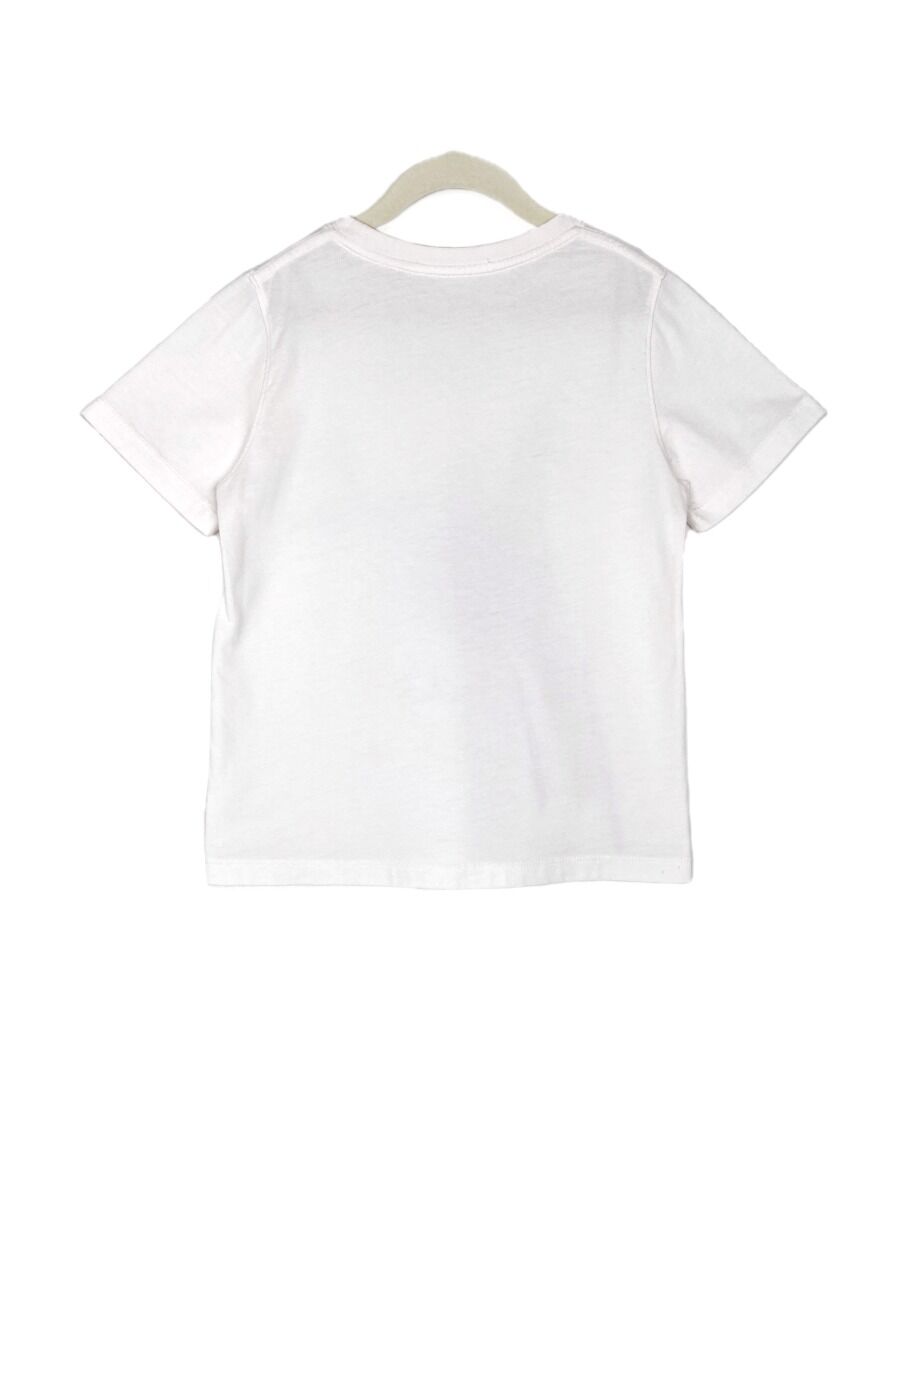 image 2 Детская футболка молочного цвета с принтом и декором из камней